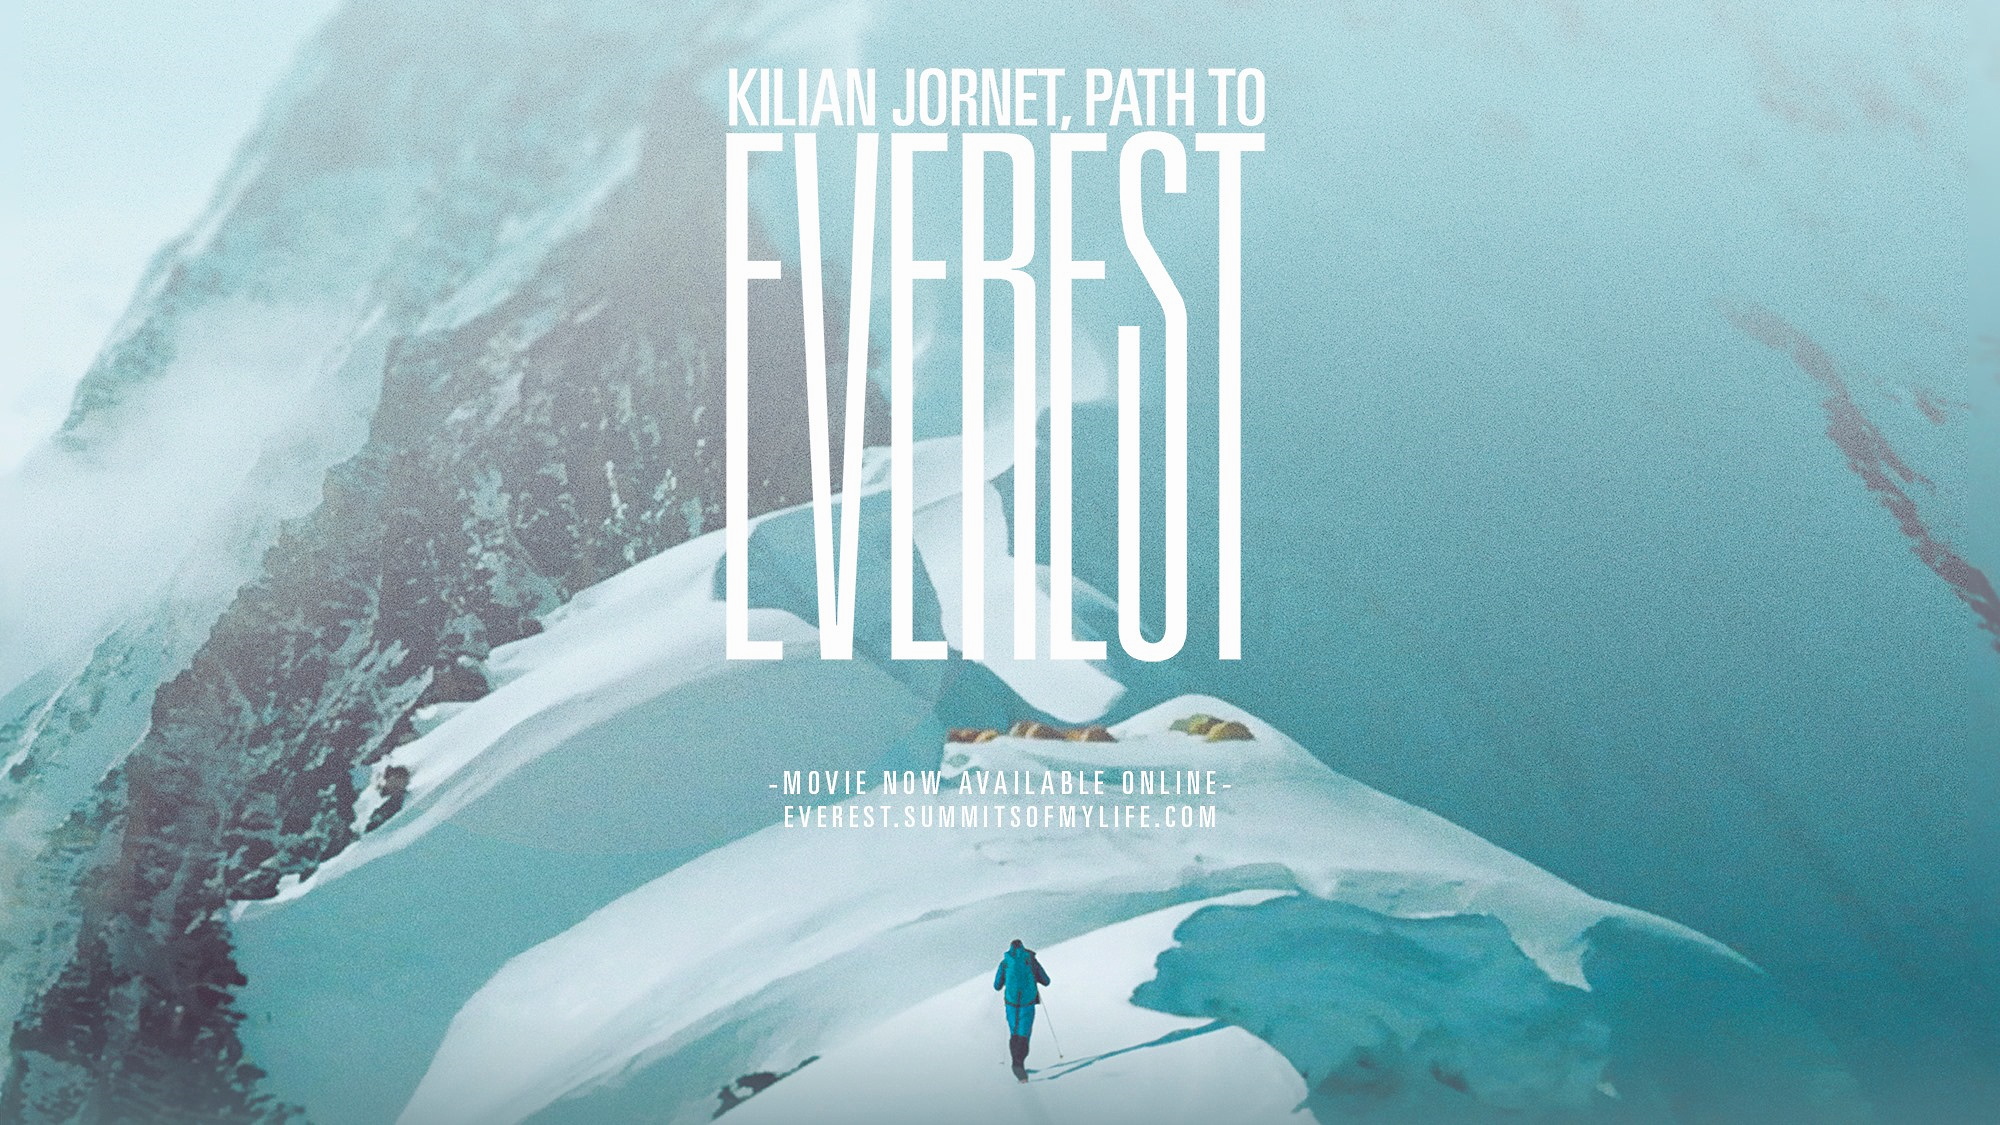 Kilian Jornet ofrece gratis durante 24 horas la película "Path to Everest", que narra su ascenso al techo del mundo